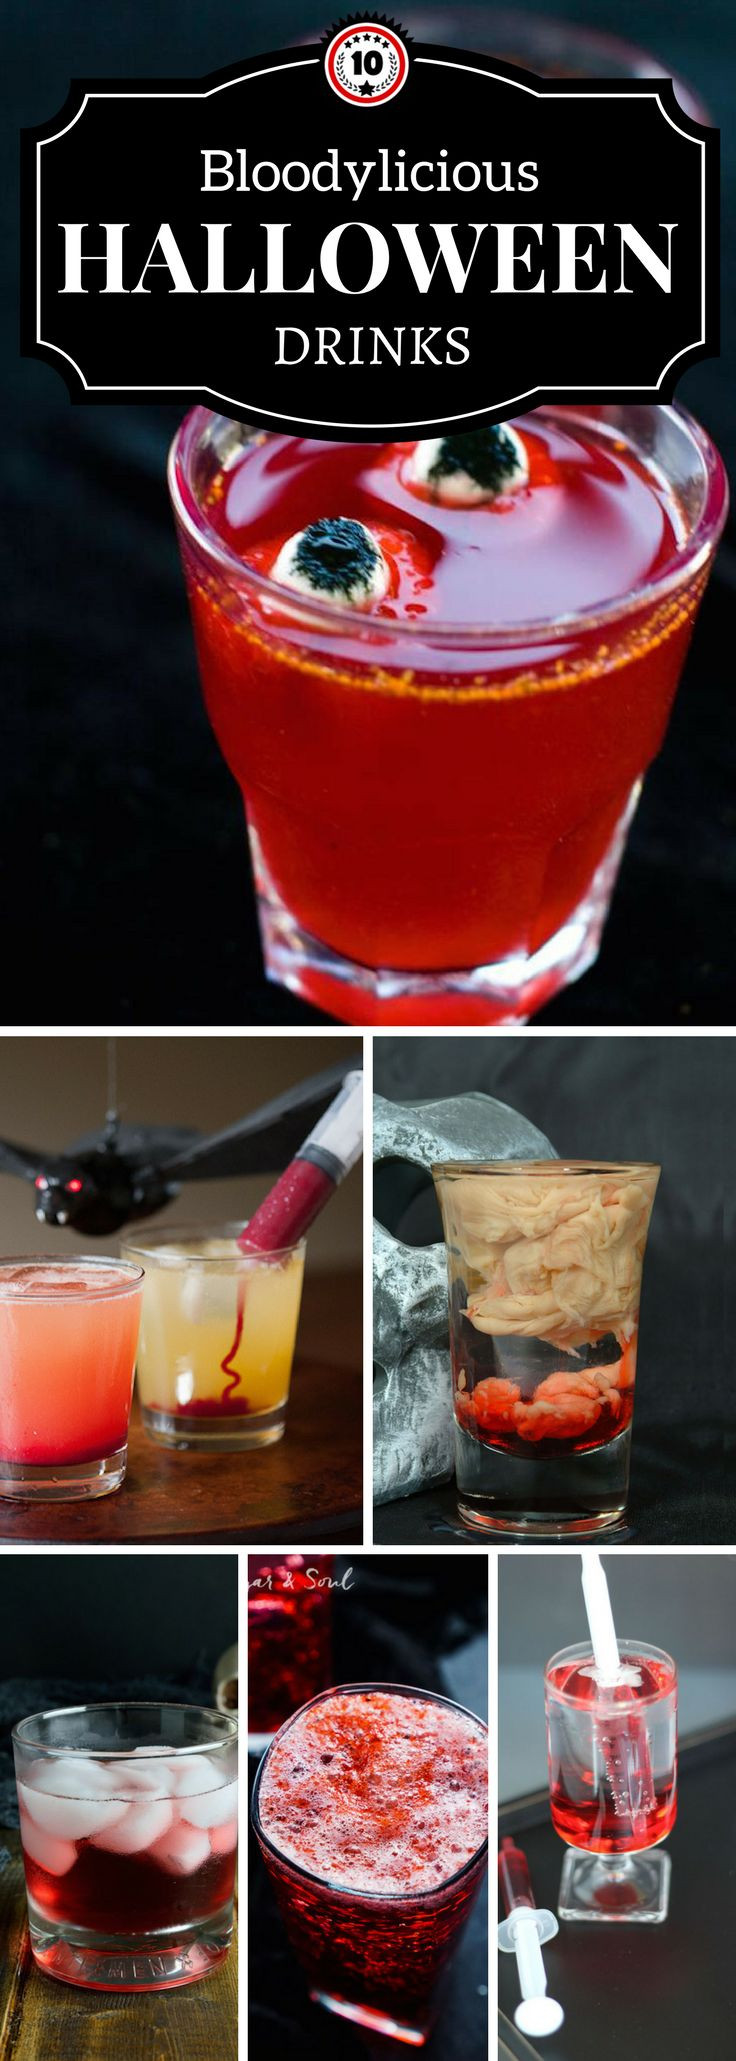 Adult Halloween Drinks
 Best 25 Halloween drinks ideas on Pinterest